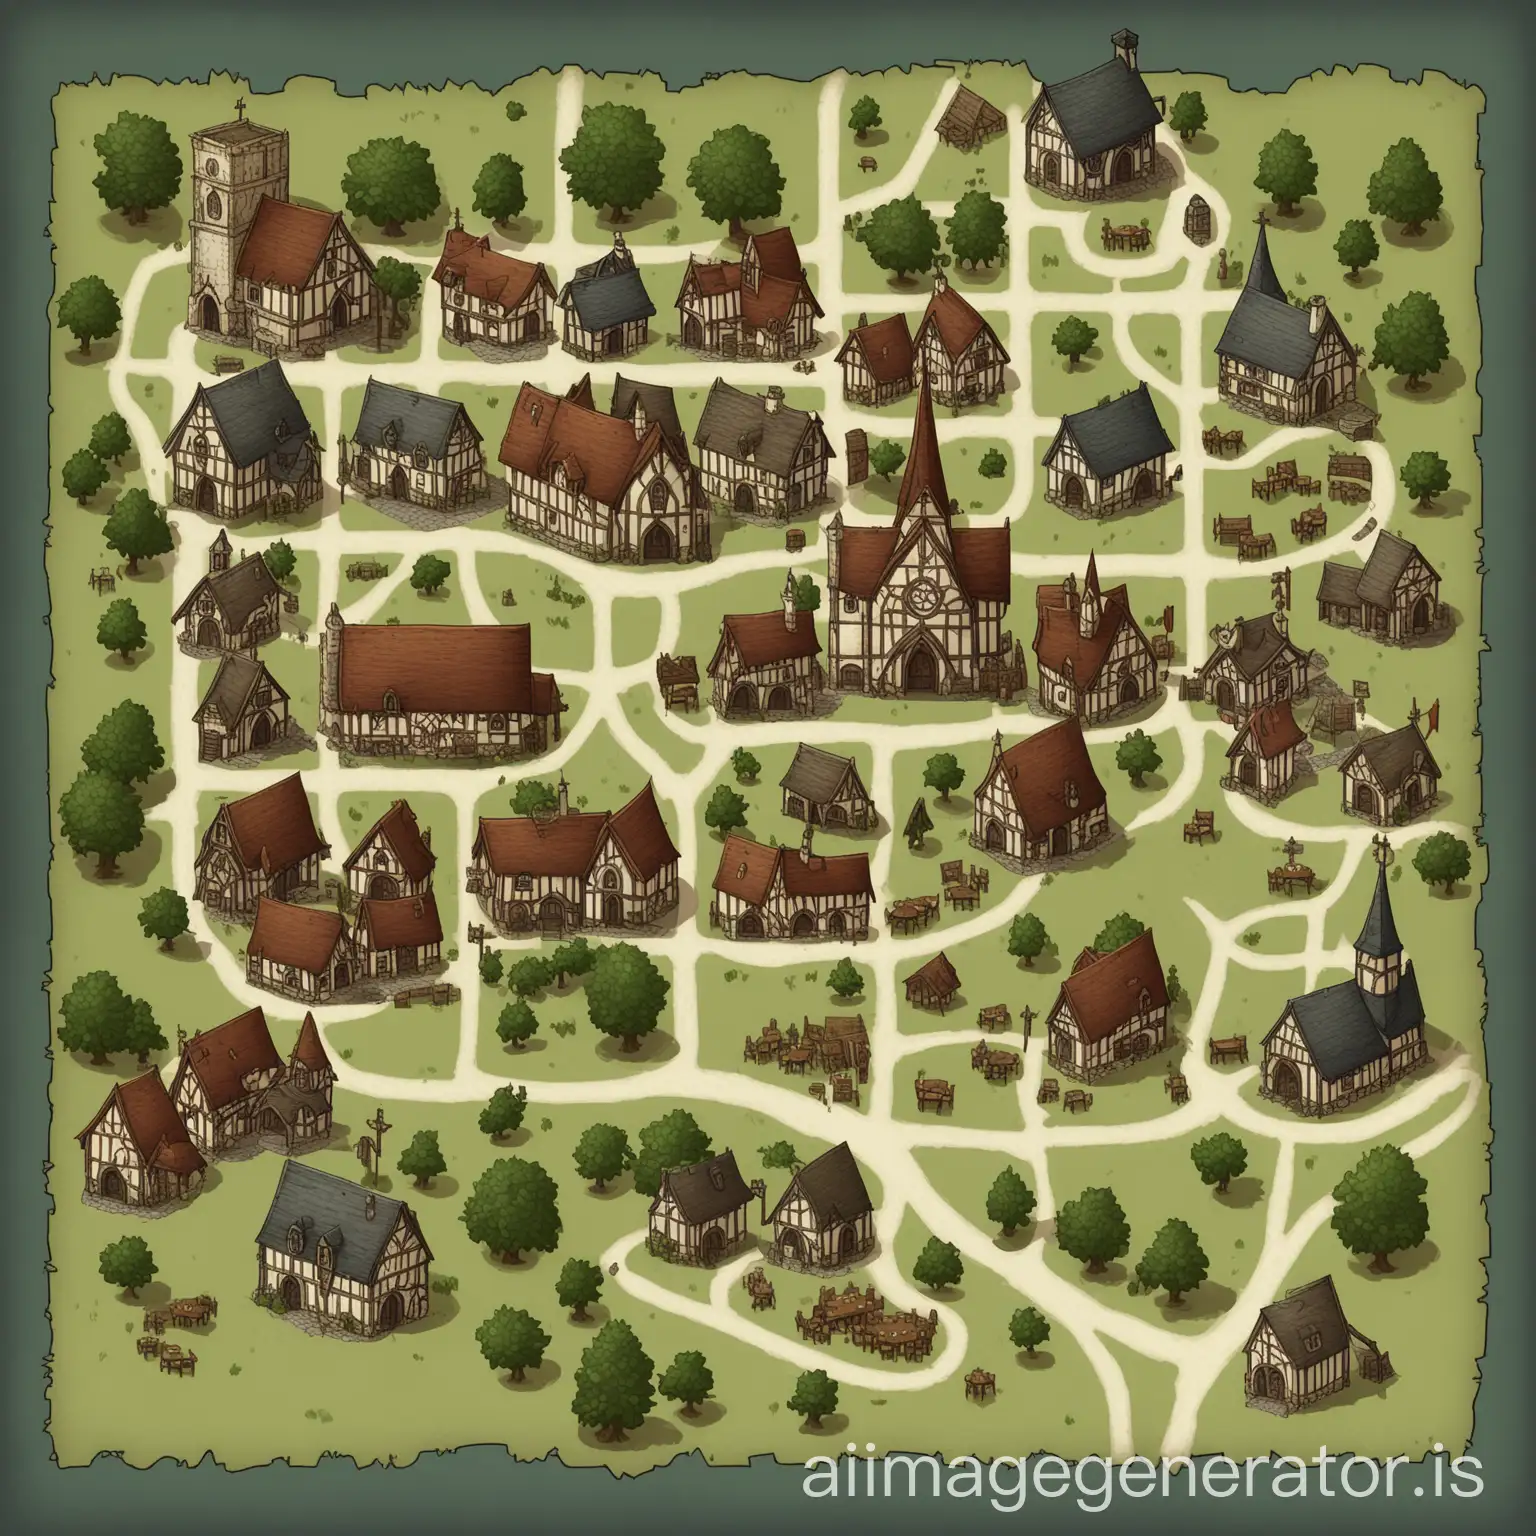 一张dnd风格的城镇地图，包含教堂酒馆，一些民房和田地